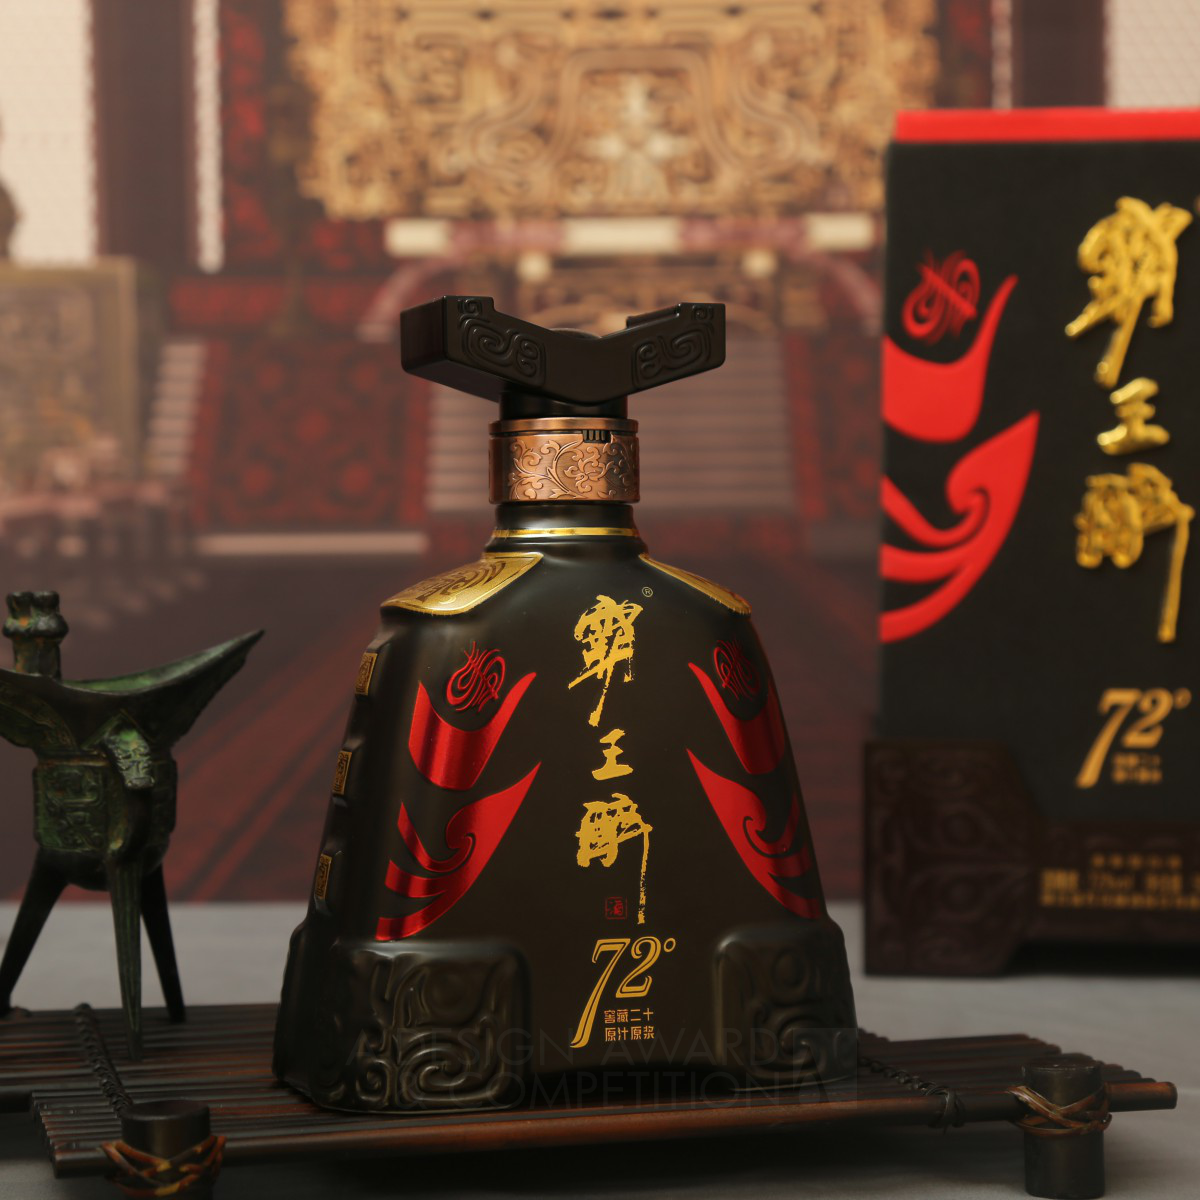 72 Xiangyu The Conqueror Liquor Chinese Baijiu